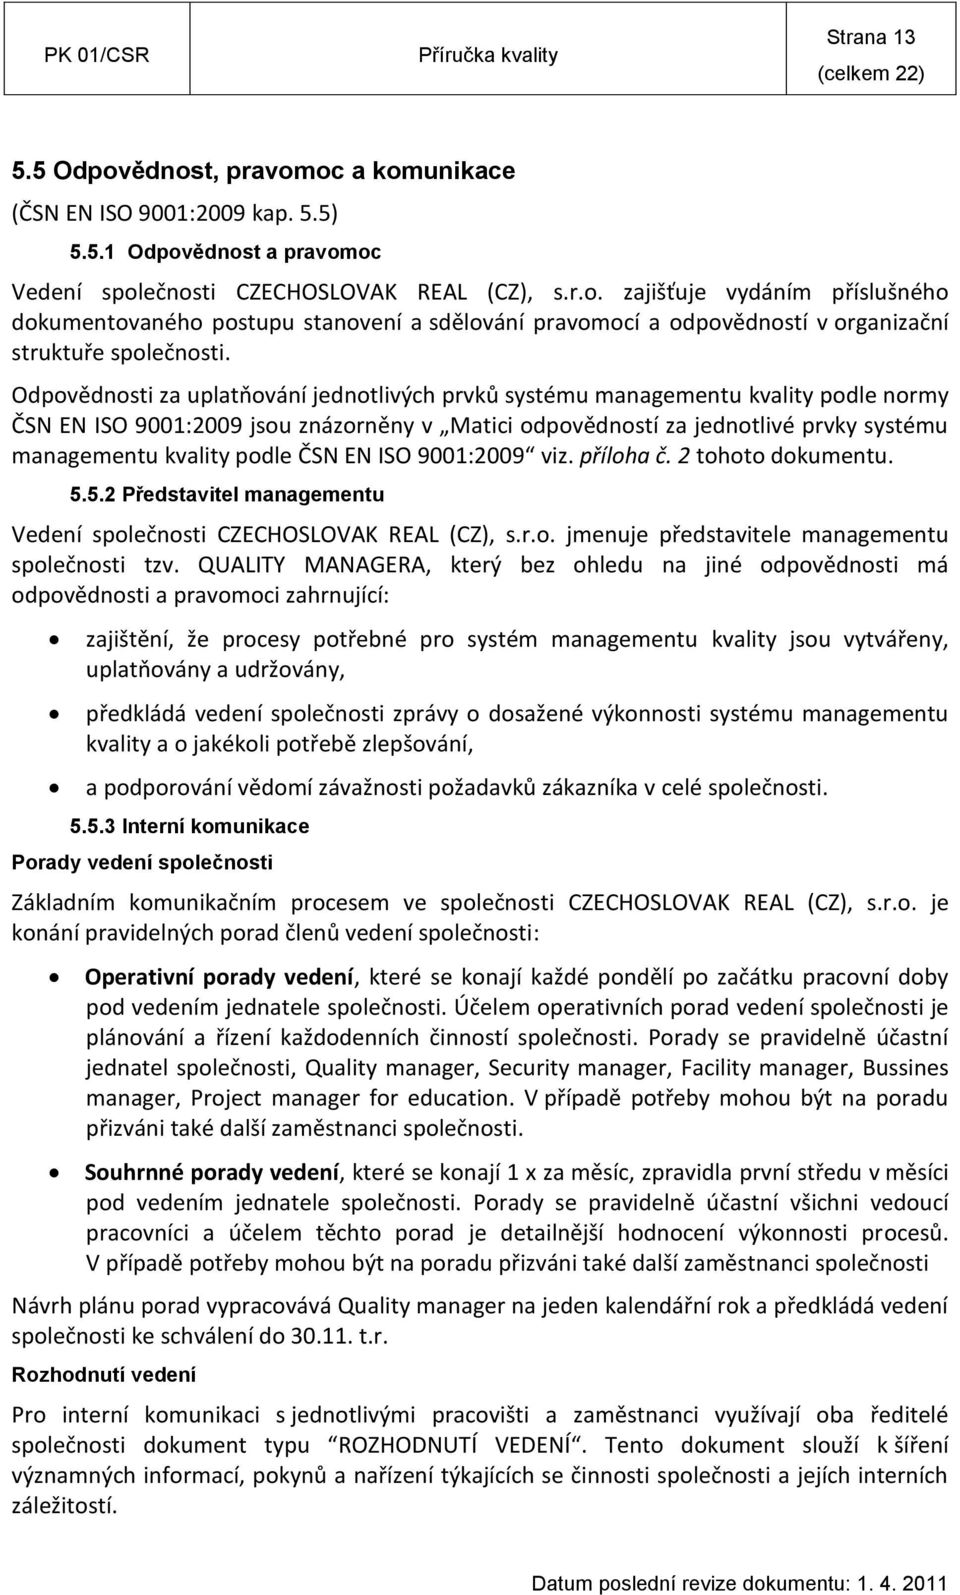 ČSN EN ISO 9001:2009 viz. příloha č. 2 tohoto dokumentu. 5.5.2 Představitel managementu Vedení společnosti CZECHOSLOVAK REAL (CZ), s.r.o. jmenuje představitele managementu společnosti tzv.